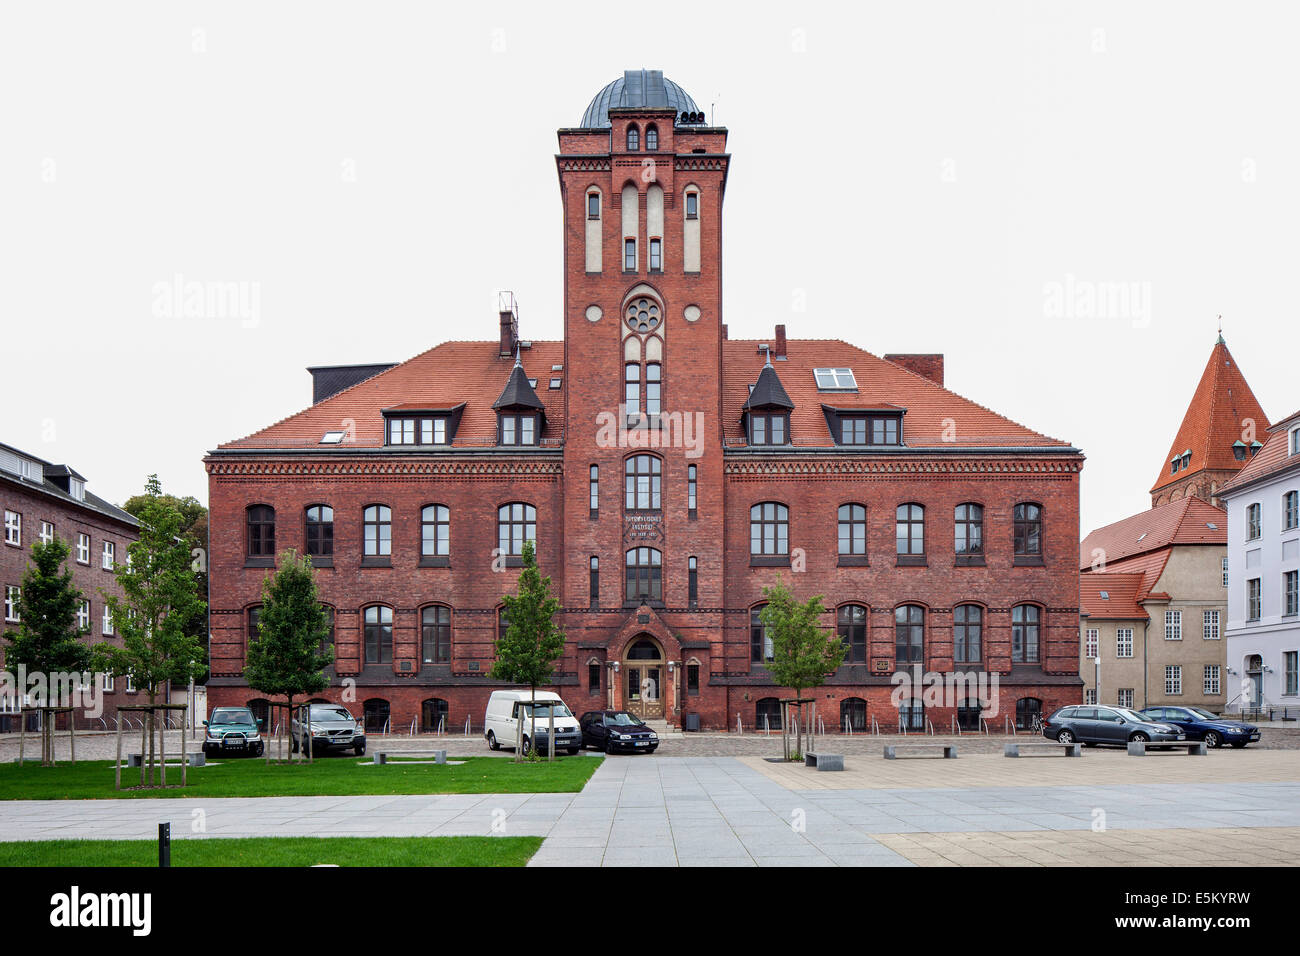 Institut de Physique, Université de Greifswald, ville hanséatique de Greifswald, Mecklembourg-Poméranie-Occidentale, Allemagne Banque D'Images